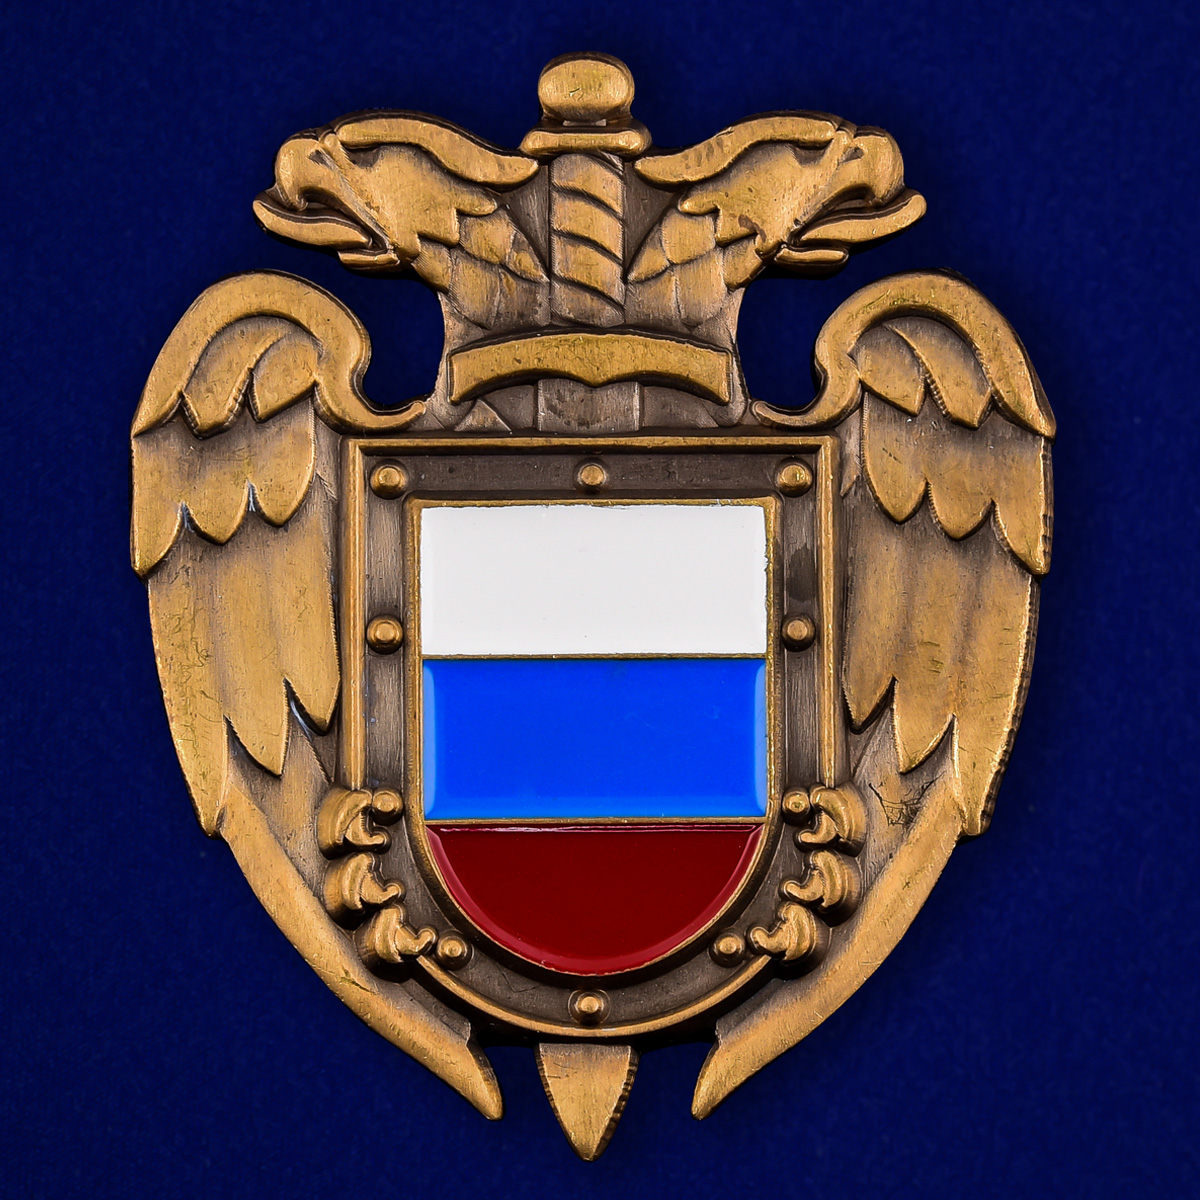 Федеральная служба охраны РФ (ФСО России